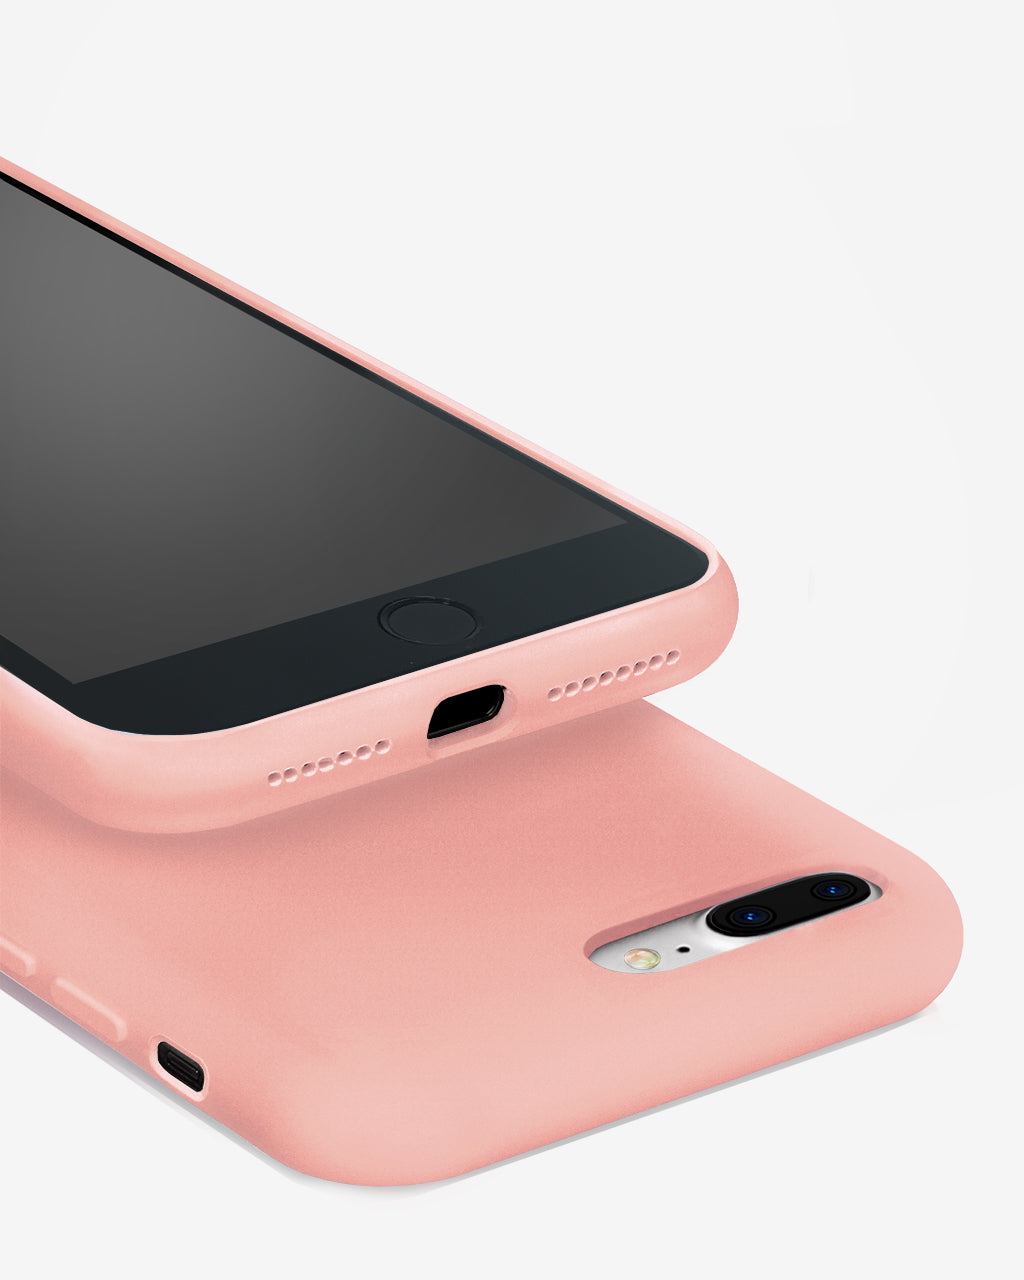 Basic Liquid Silicone Phone Case for iPhone 8 Plus